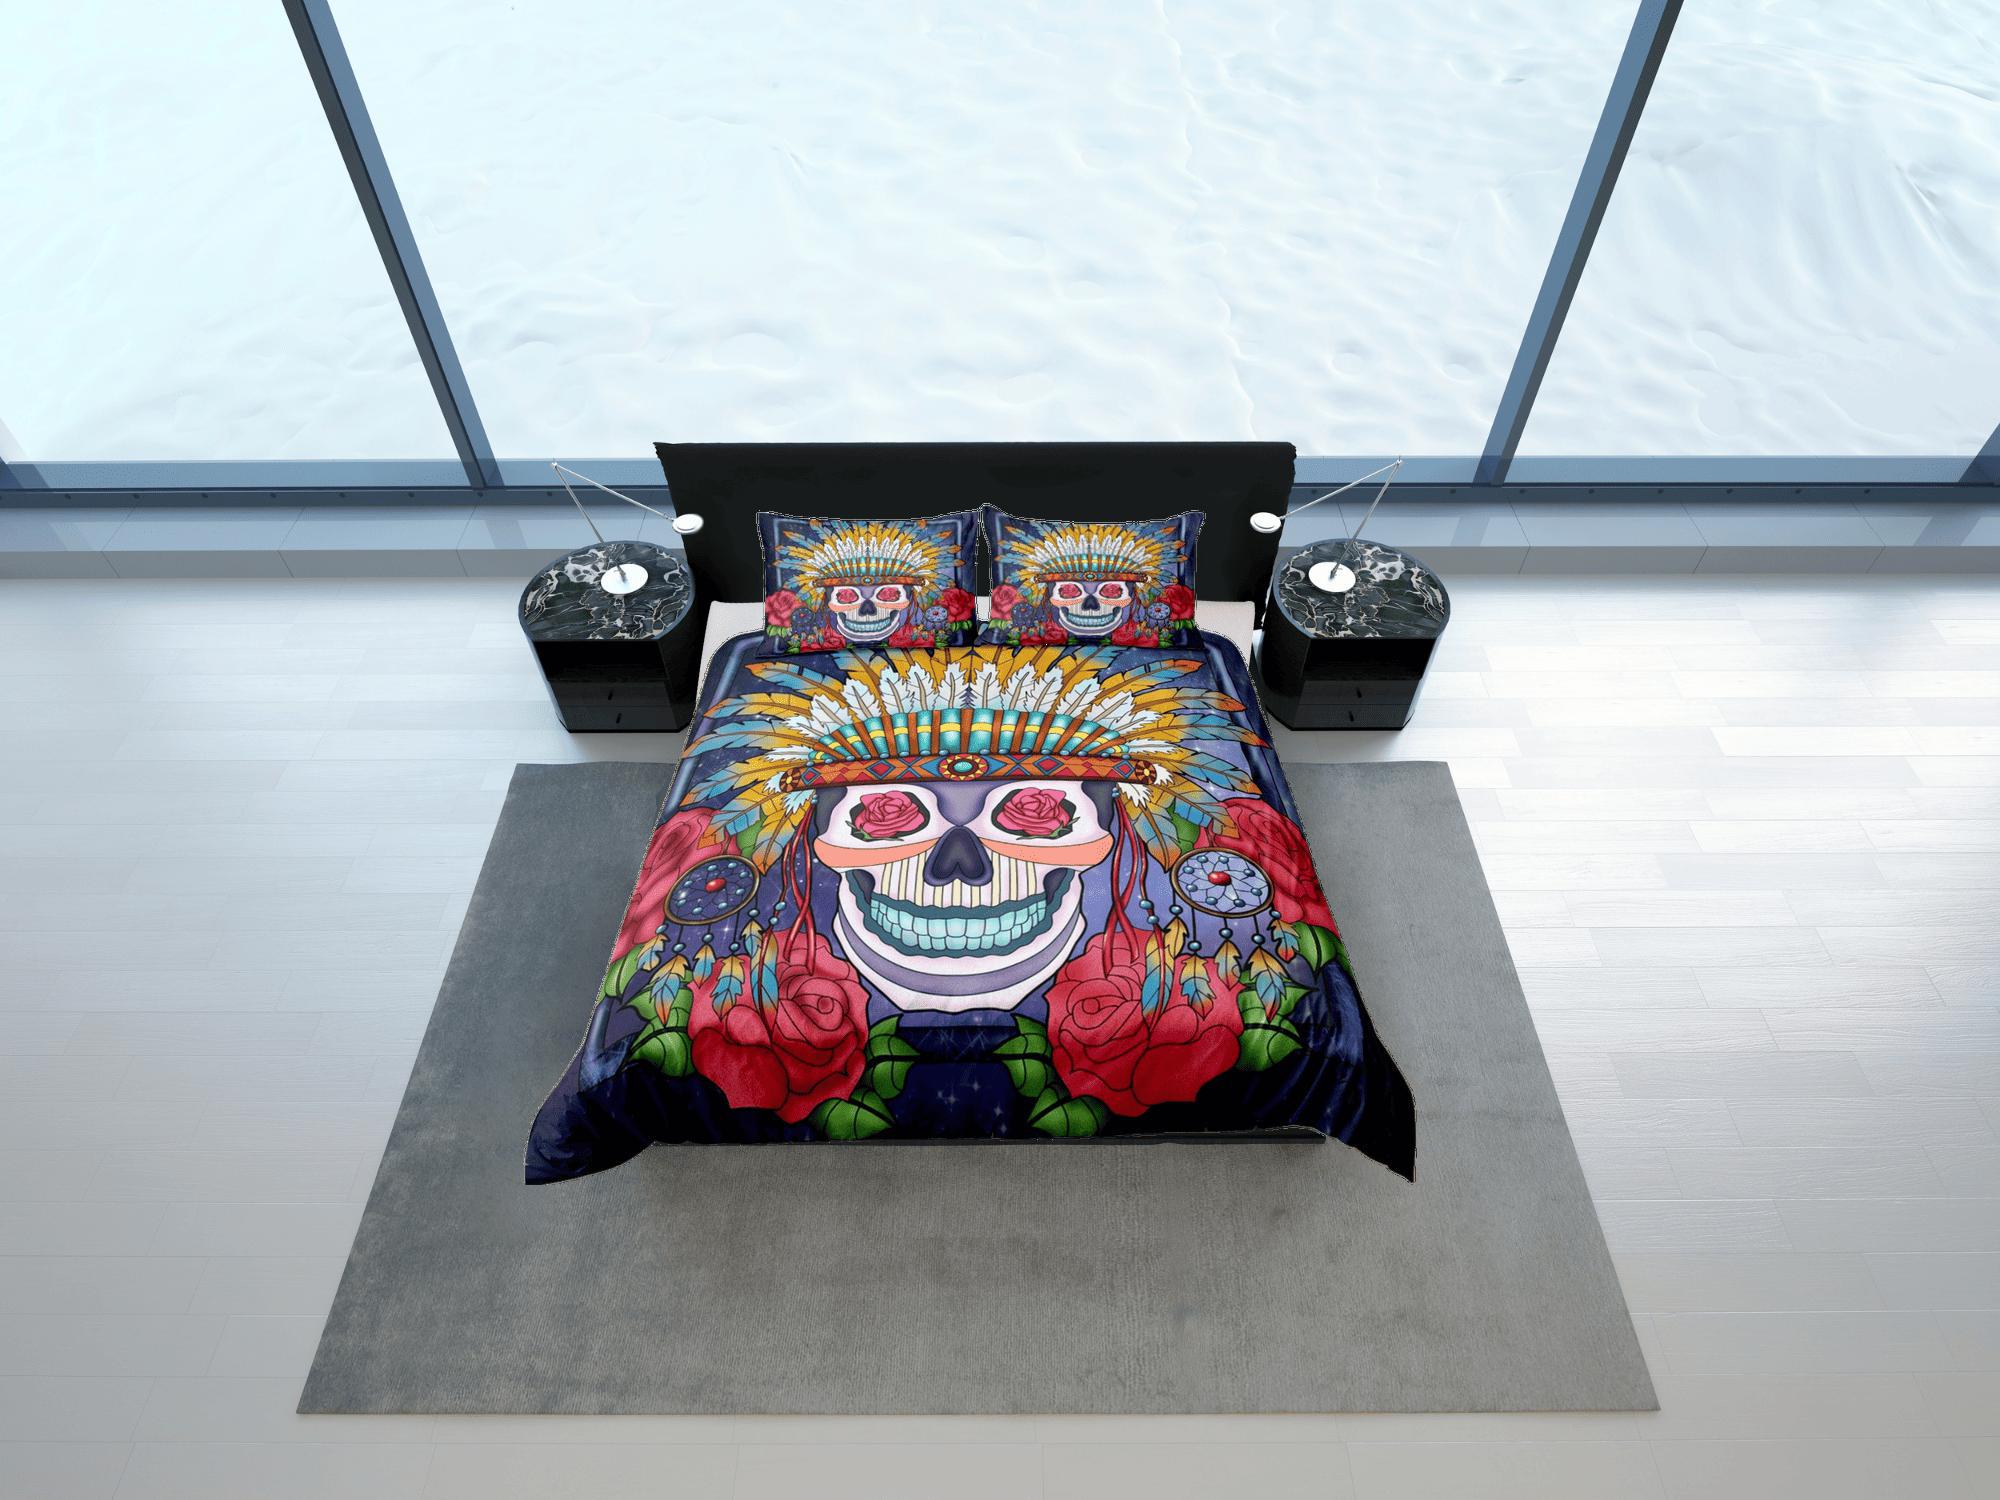 daintyduvet Cinco de Mayo Skull Duvet Cover Set Colorful Bedspread Dorm Bedding Pillowcase Bedding Mexican Design